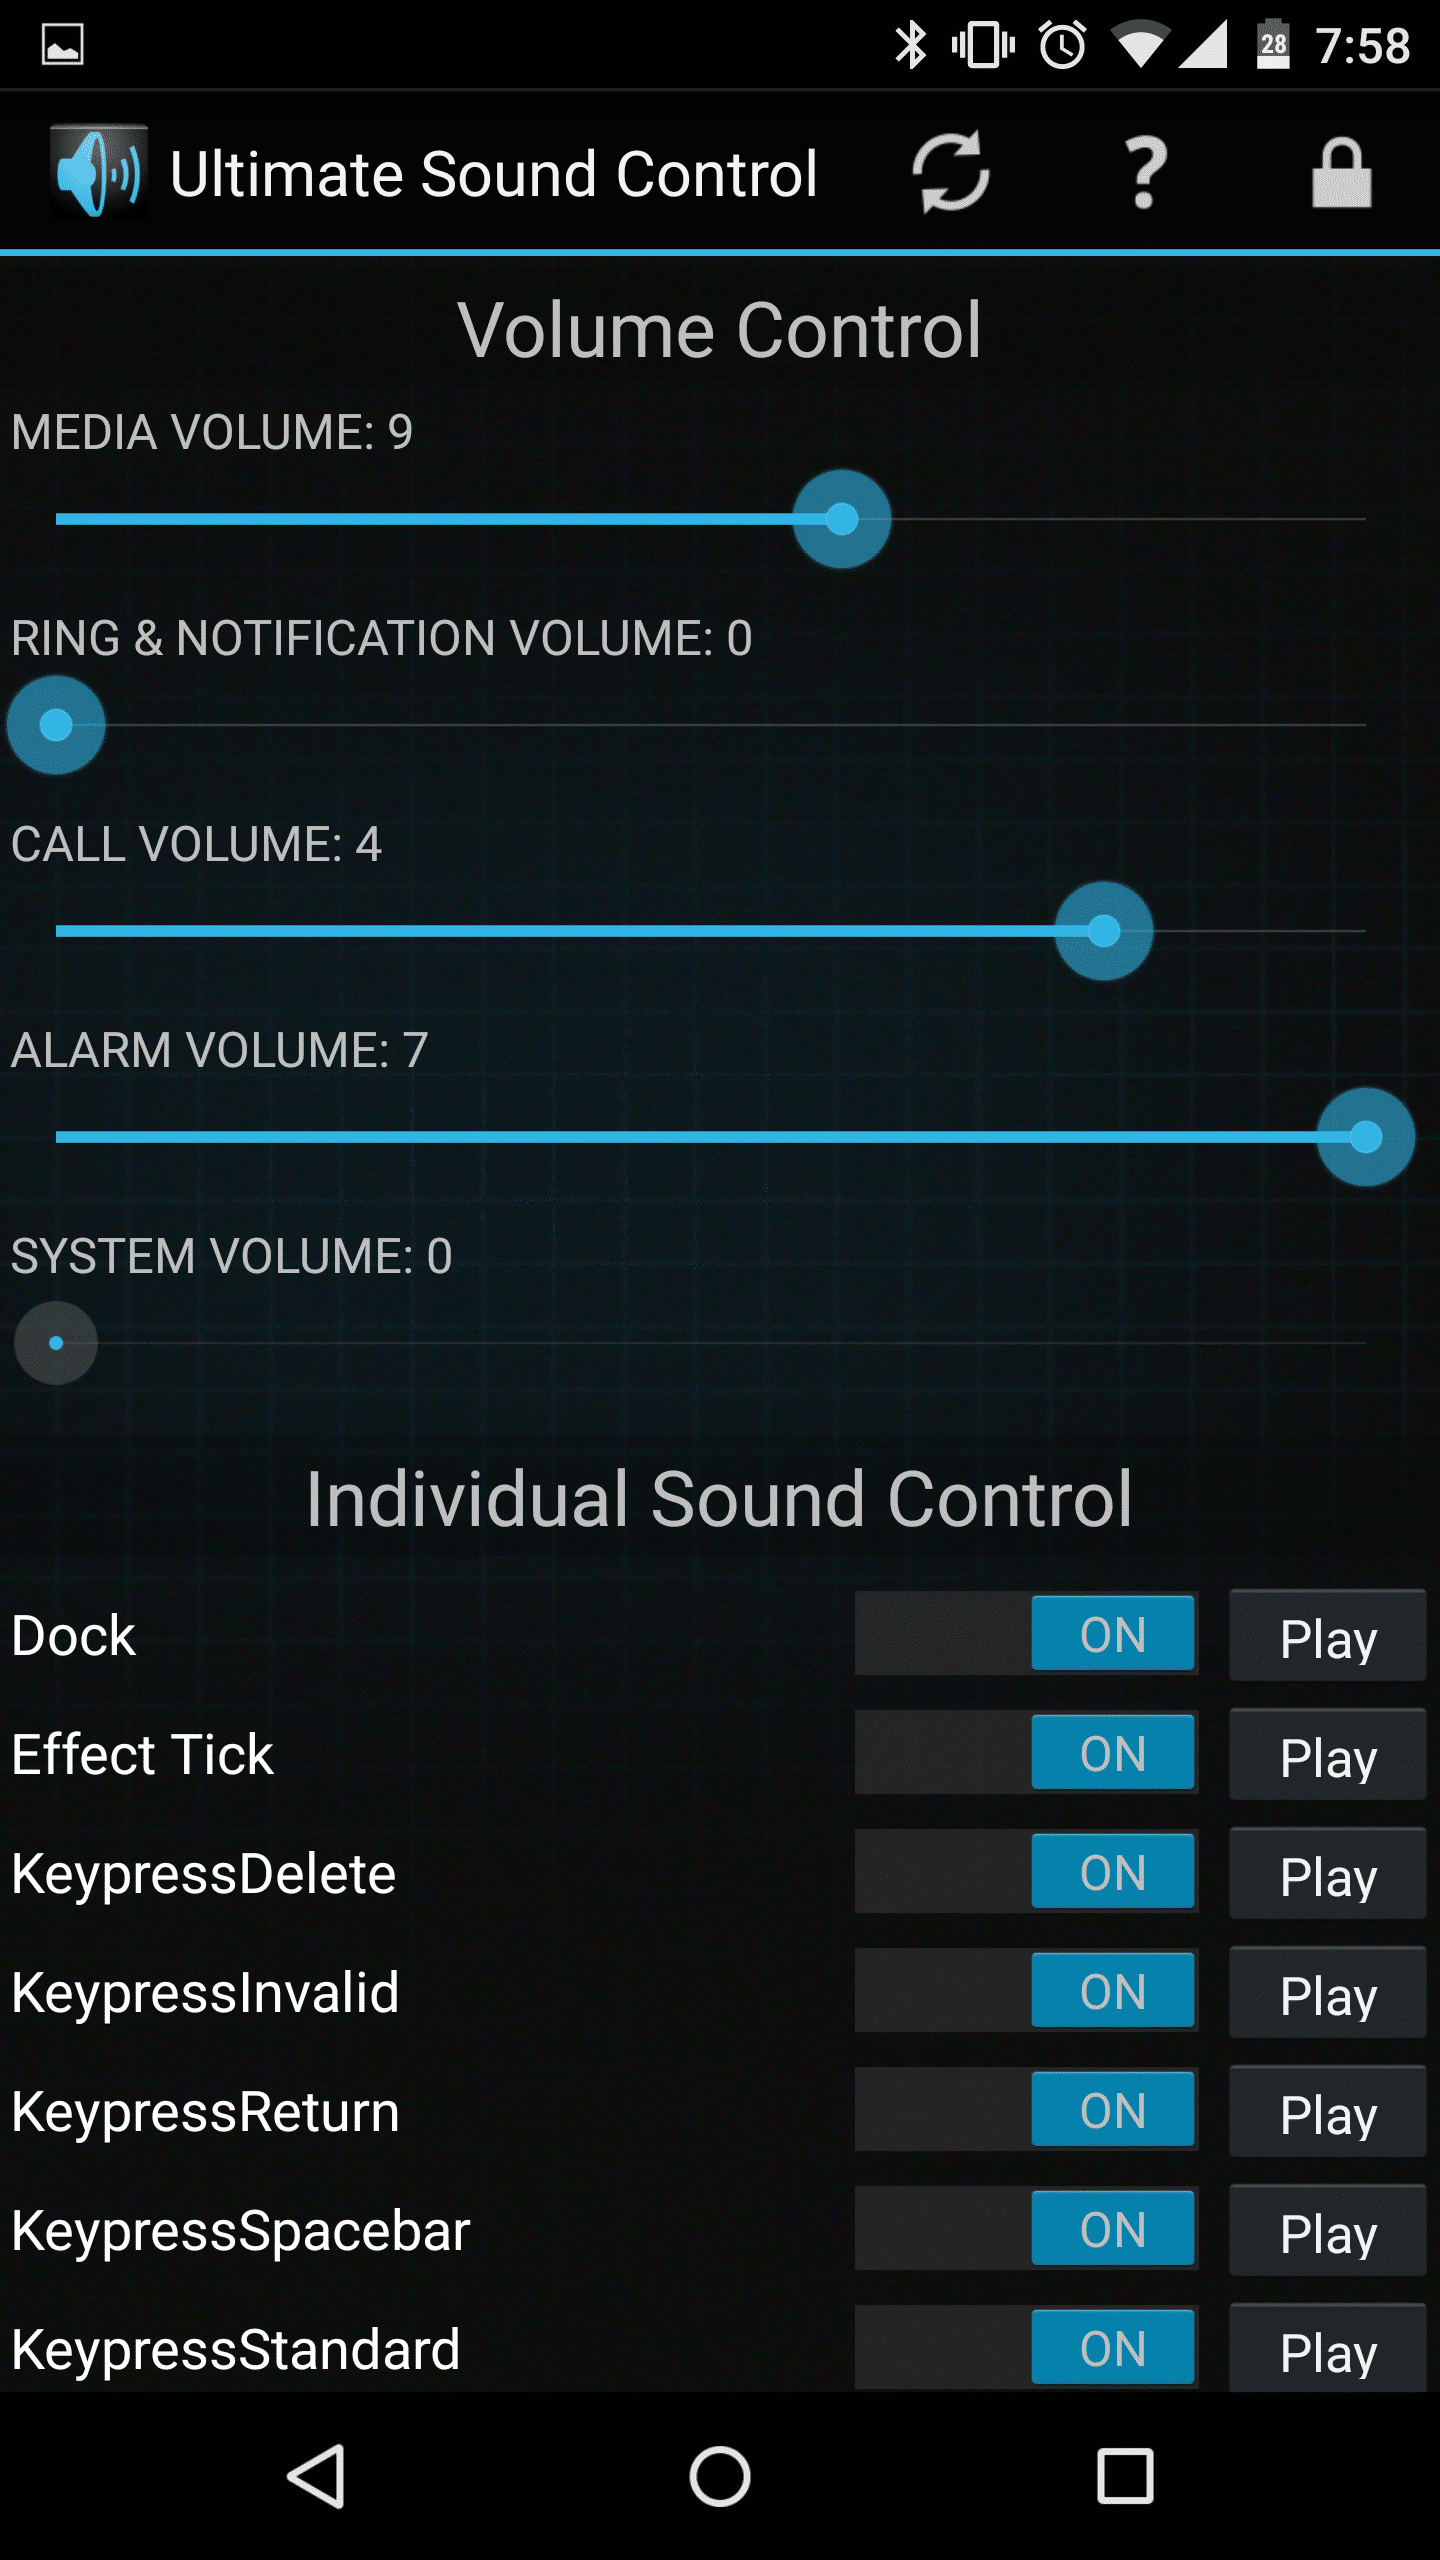 Ultimate Sound Control Androidのカメラシャッター音などをワンタッチで無音化できる便利アプリ 要root アンドロイドラバー